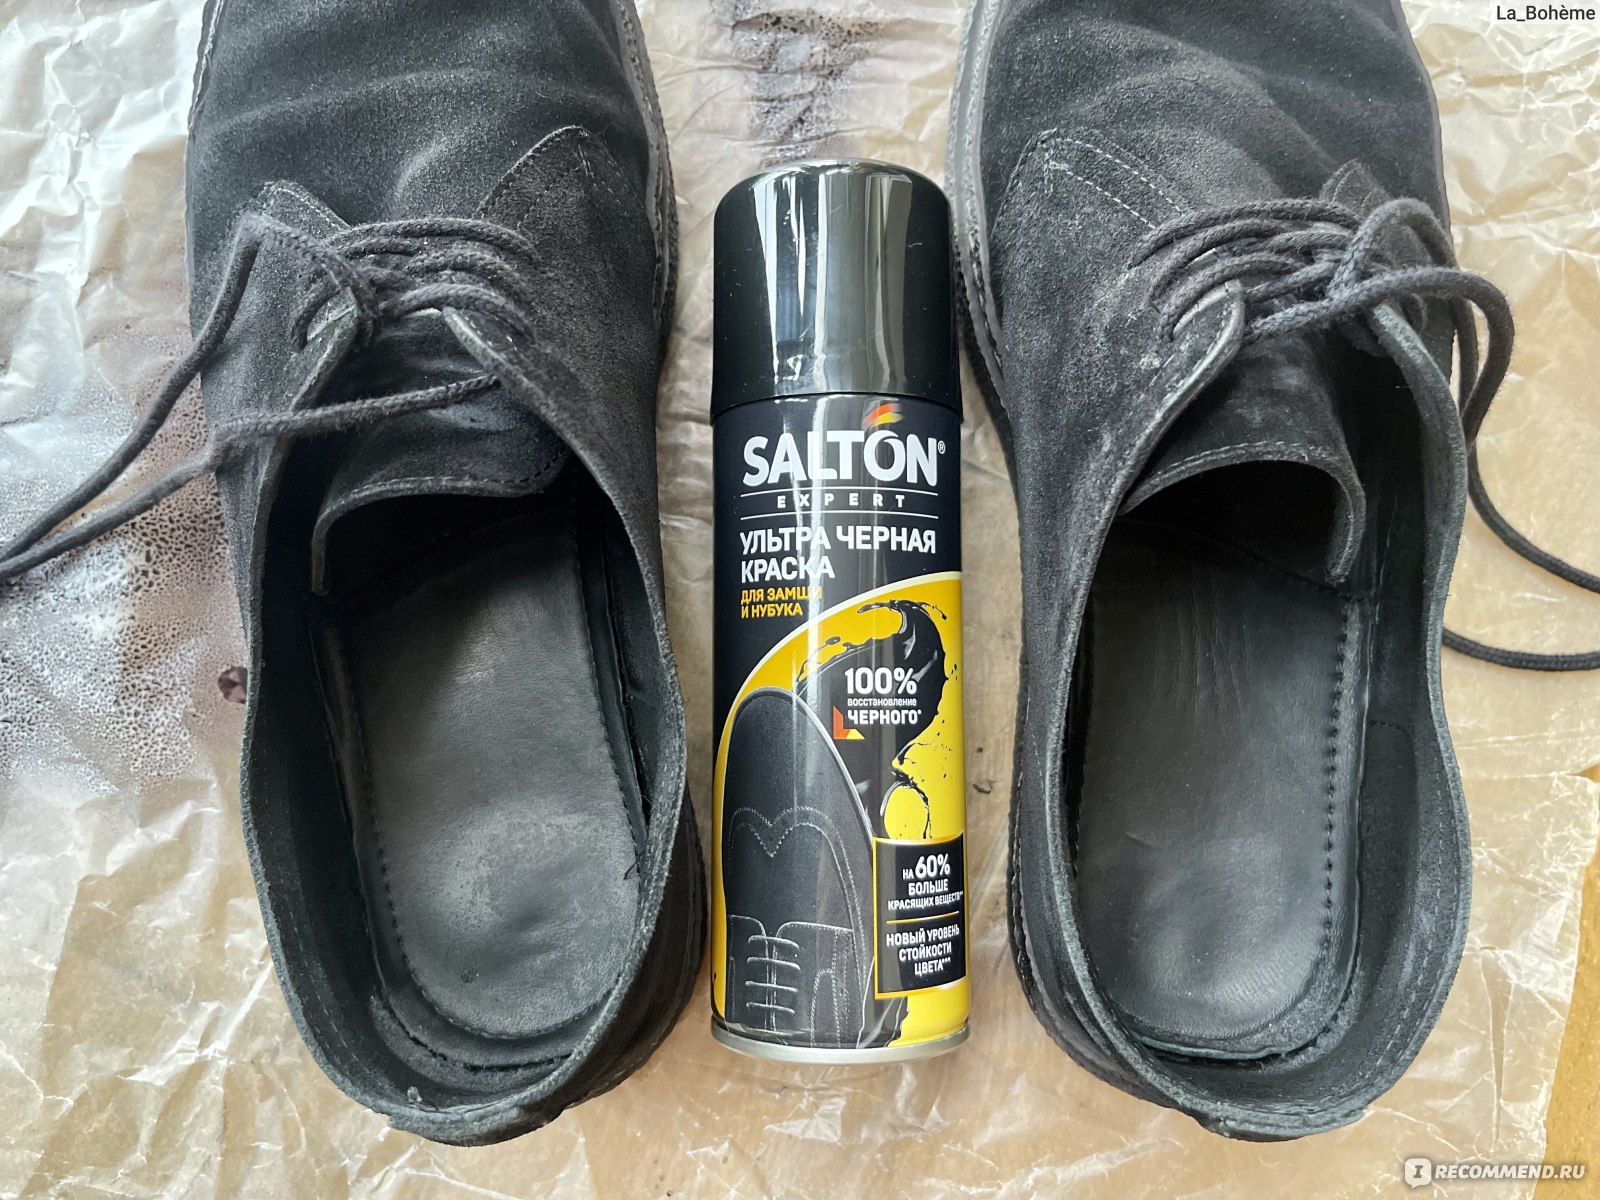 Краска для обуви из замши, нубука и велюра Salton expert ультра черная -  «Простой способ обновить замшевую обувь. Краска для обуви Salton expert  ультра черная, фото до и после окрашивания» | отзывы